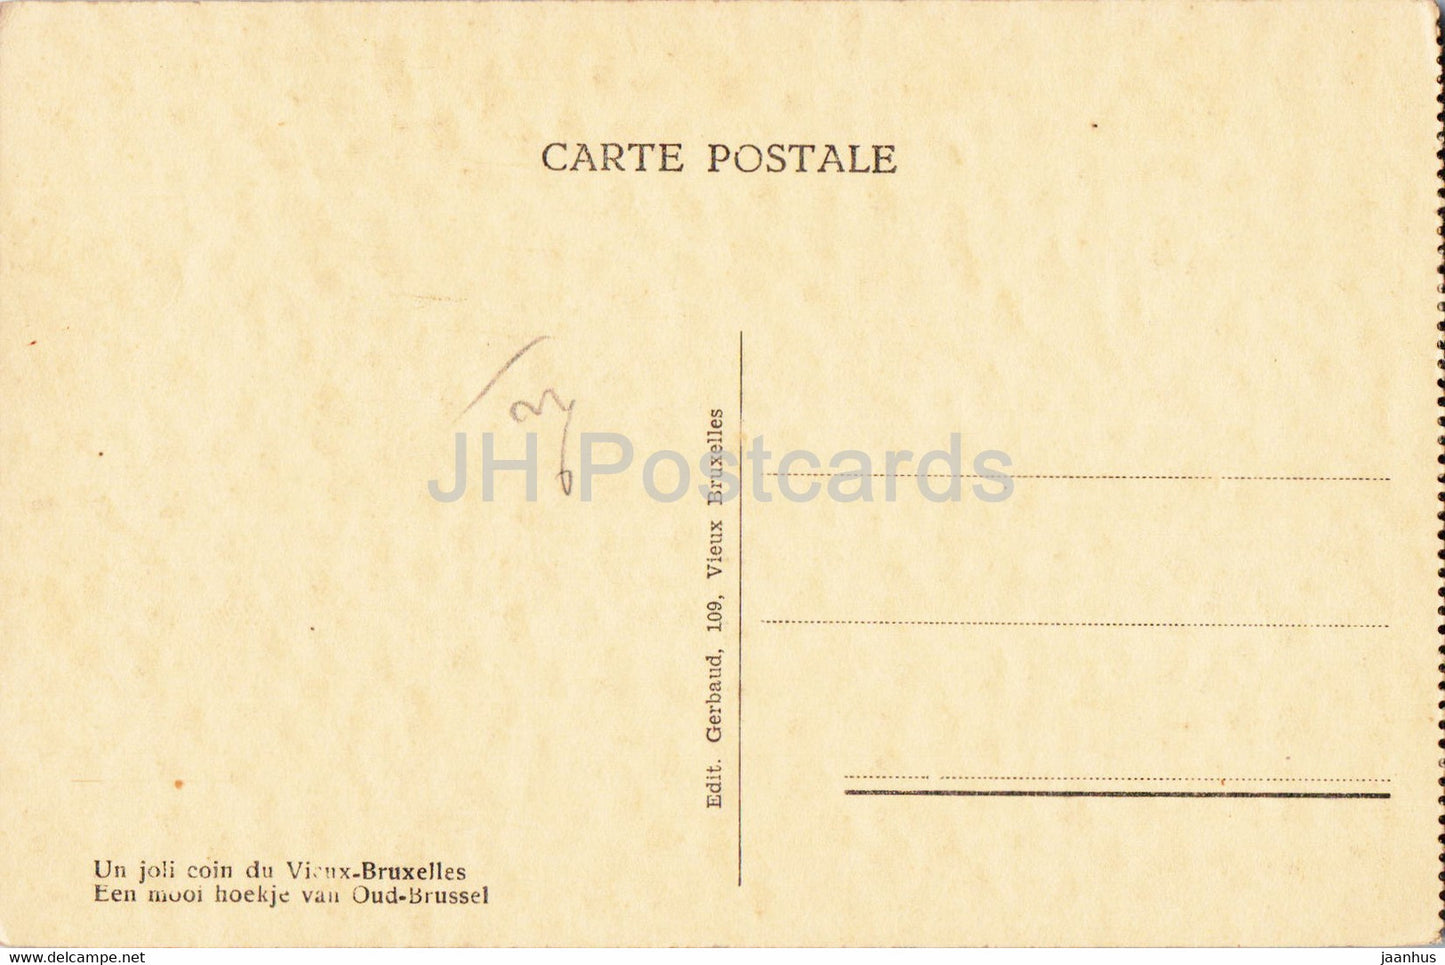 Bruxelles - Brussels - Exposition 1935 - Un joli coin du Vieux Bruxelles - old postcard - Belgium - unused